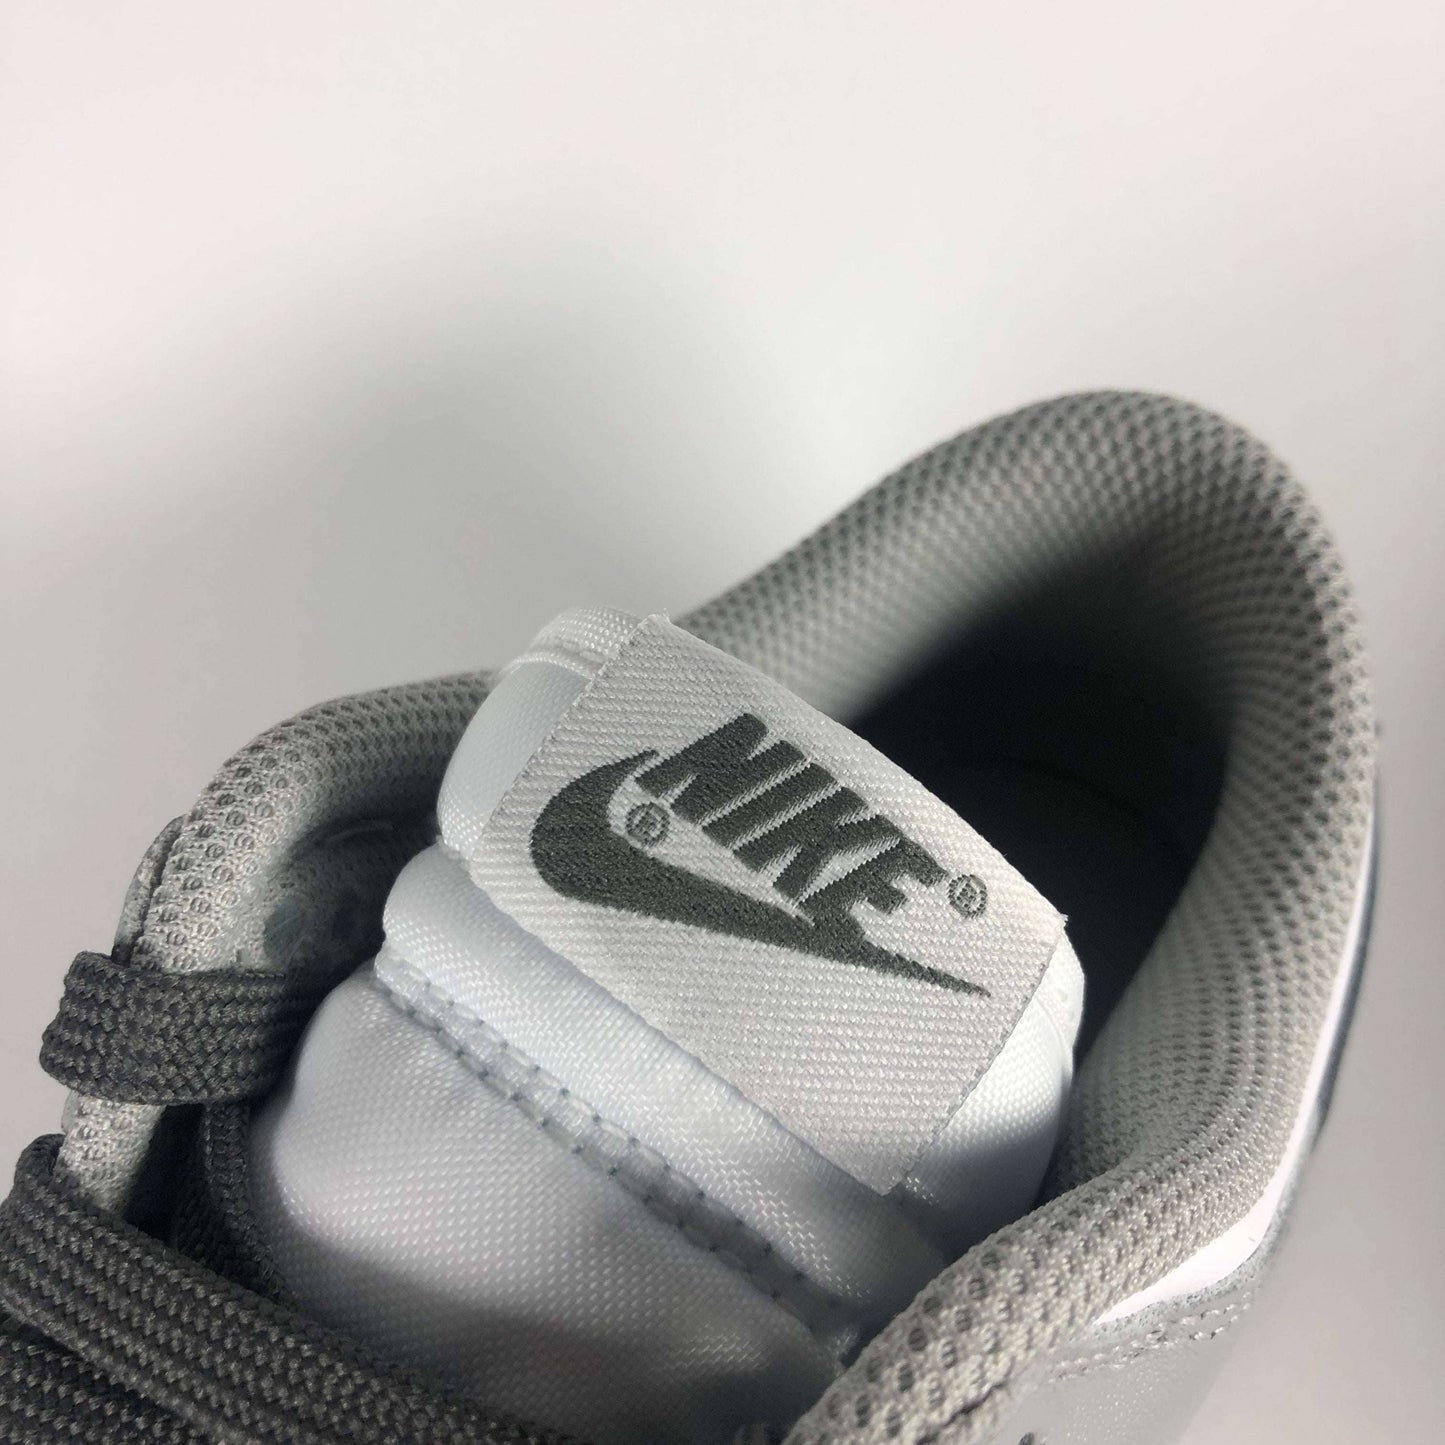 Nike Dunk Low Light Smoke Grey Tongue